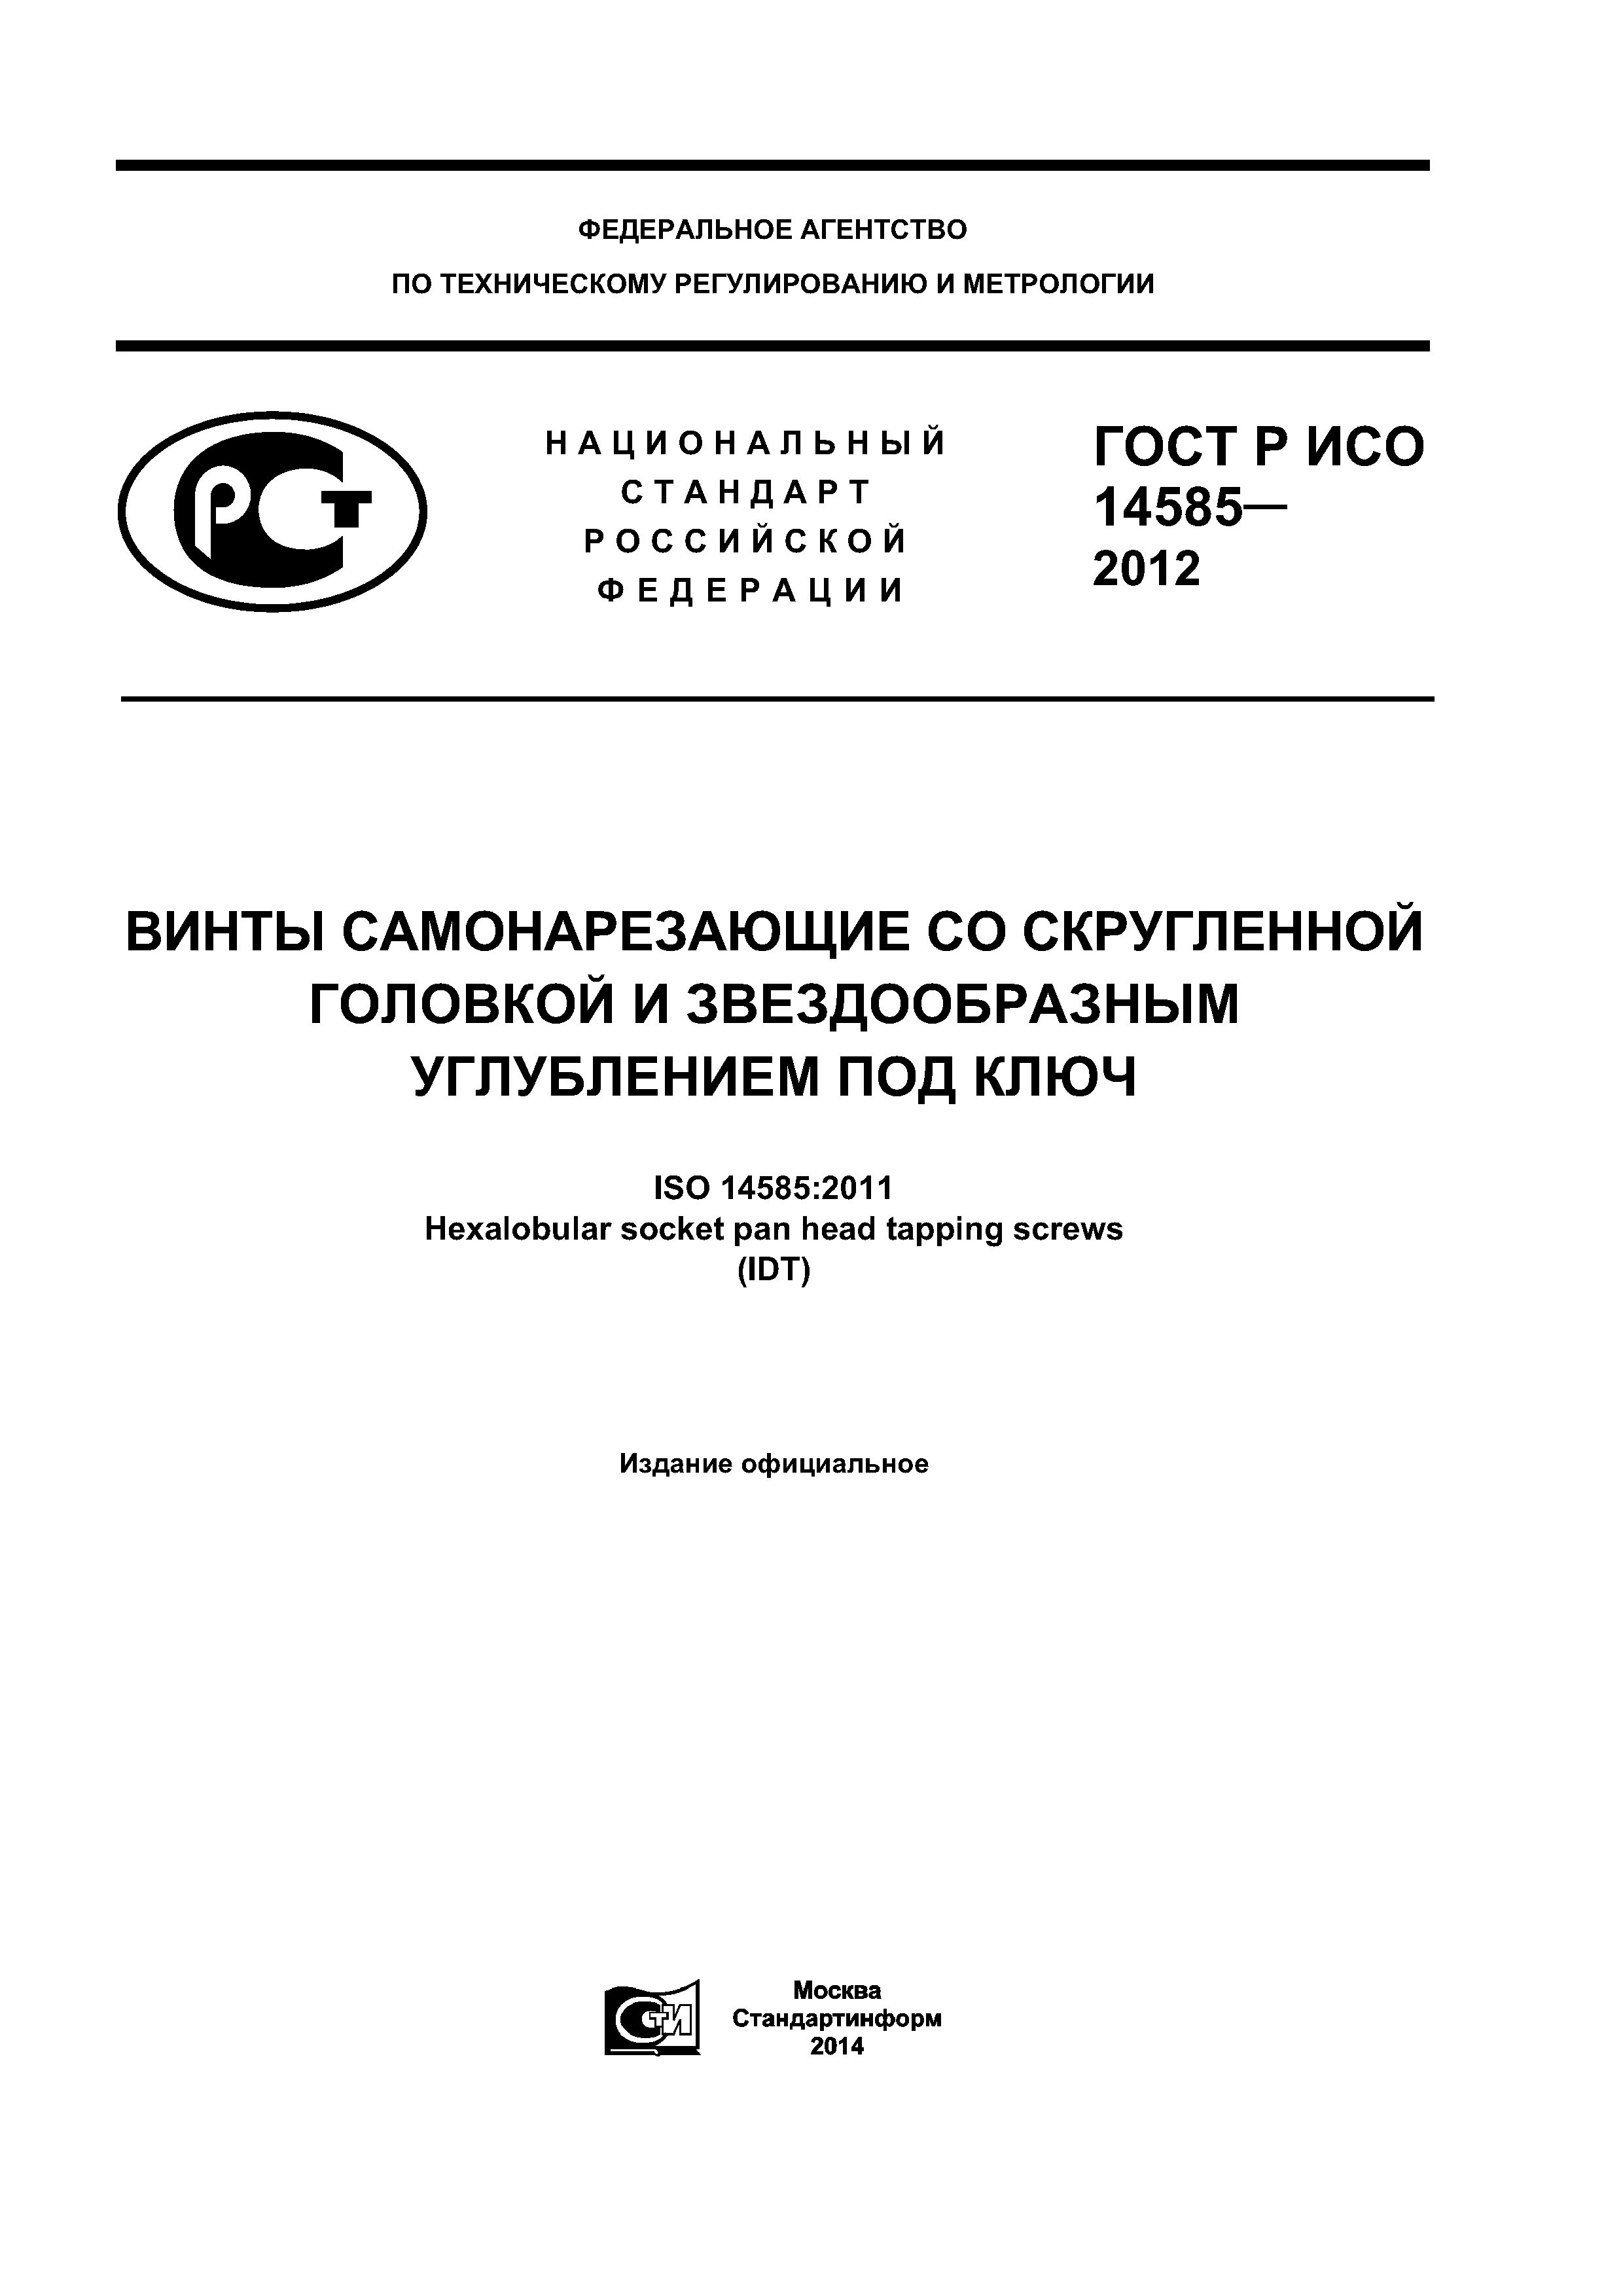 ГОСТ Р ИСО 14585-2012